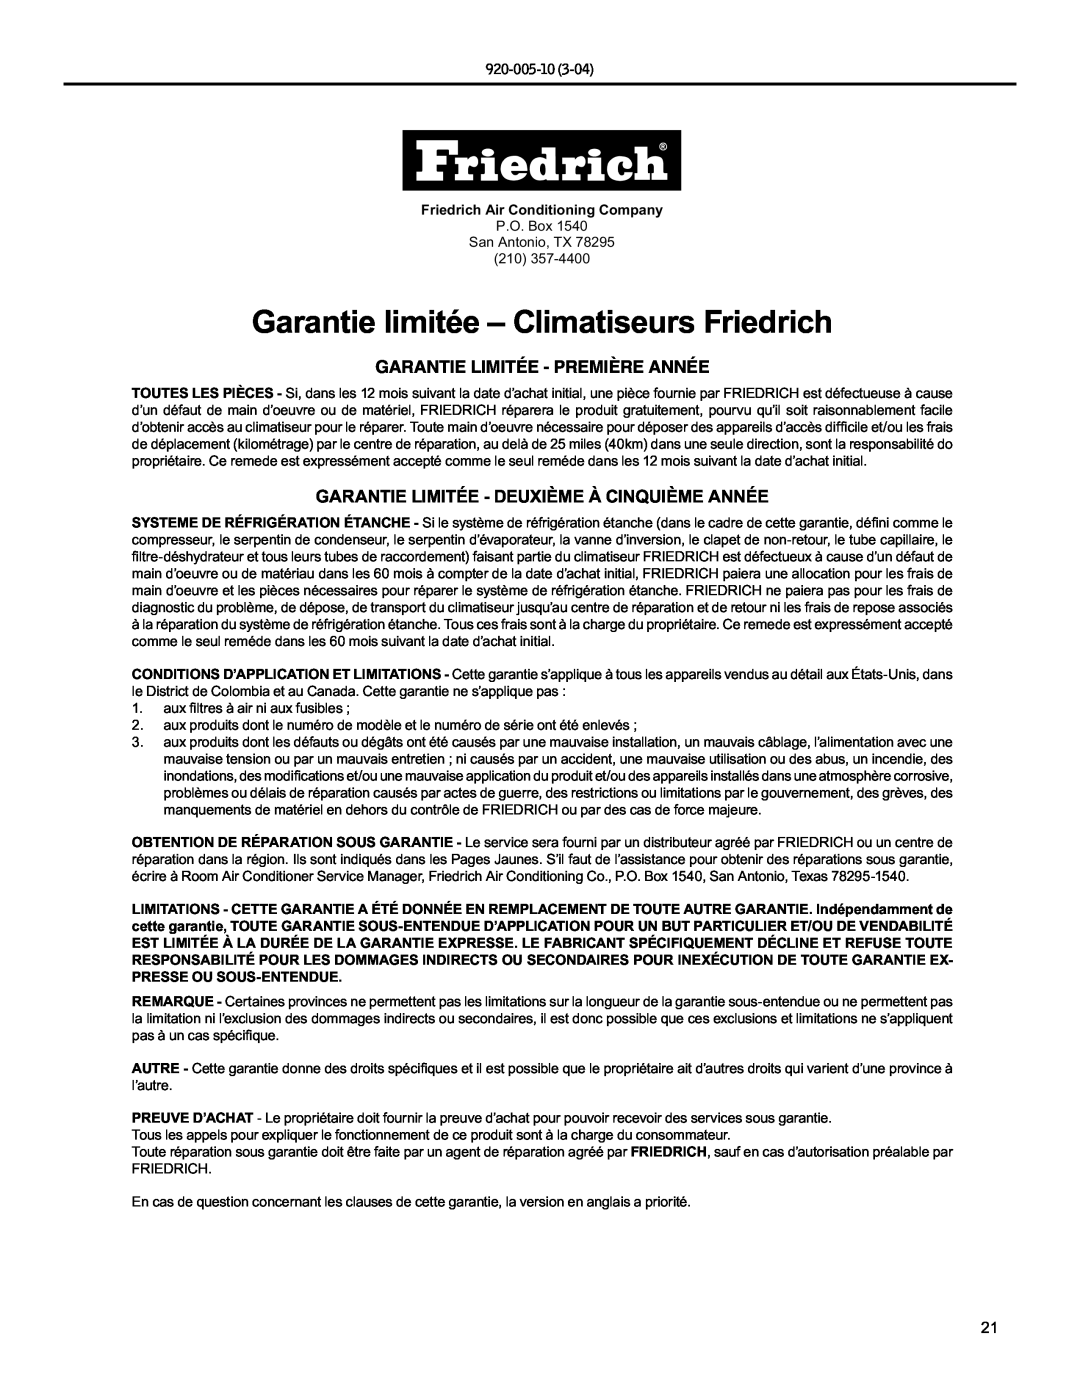 Friedrich KM20, KS10 manual Garantie limitée - Climatiseurs Friedrich, Garantie Limitée - Première Année, 920-005-10 